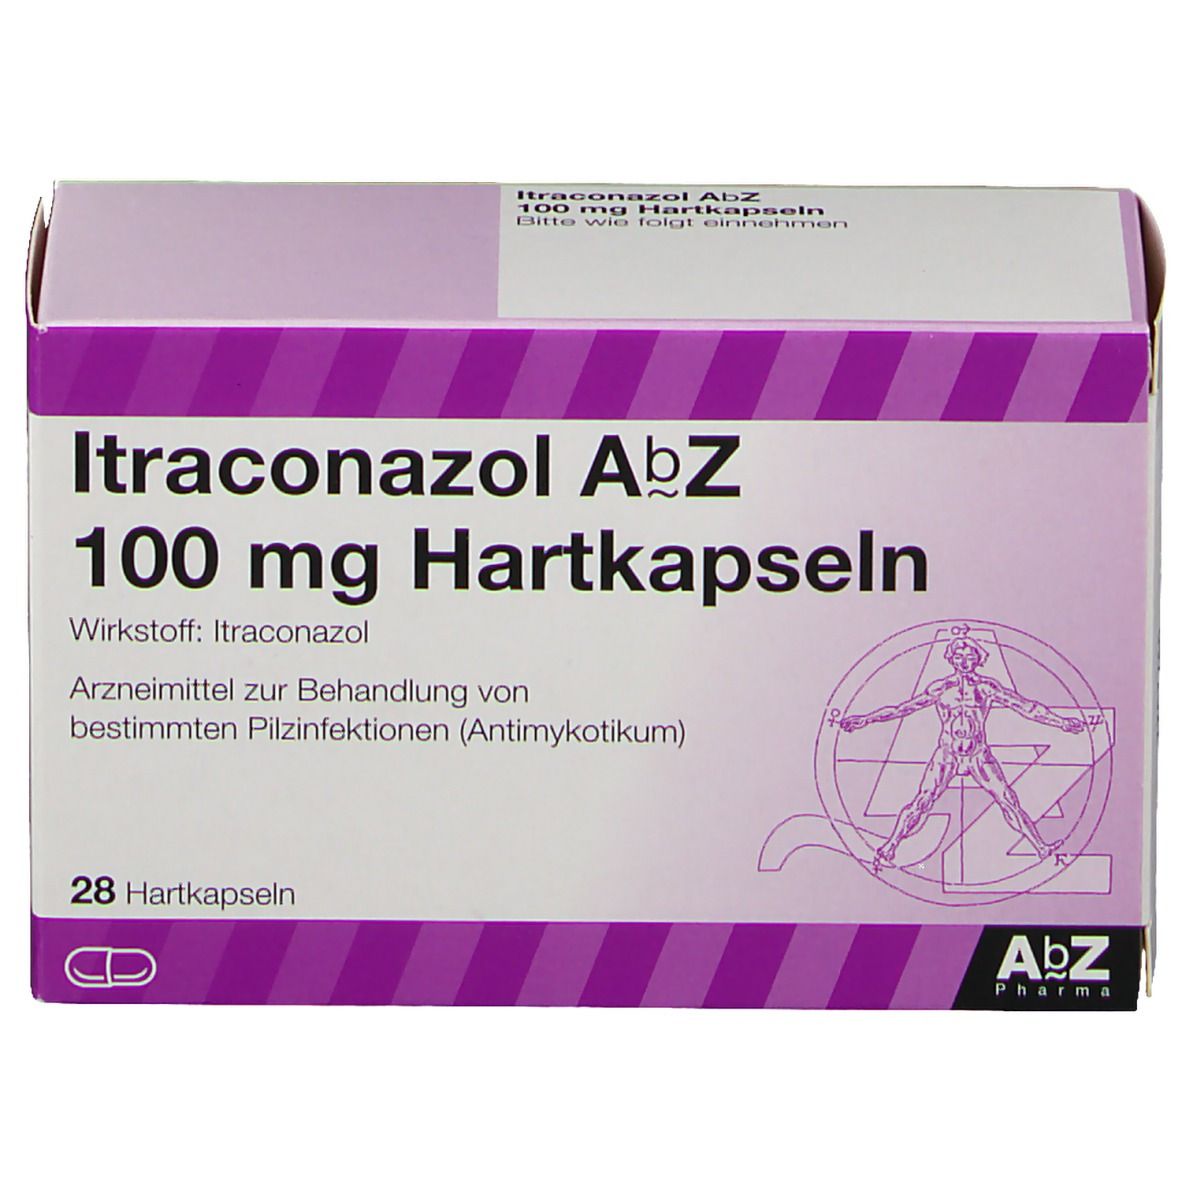 Itraconazol AbZ 100 mg